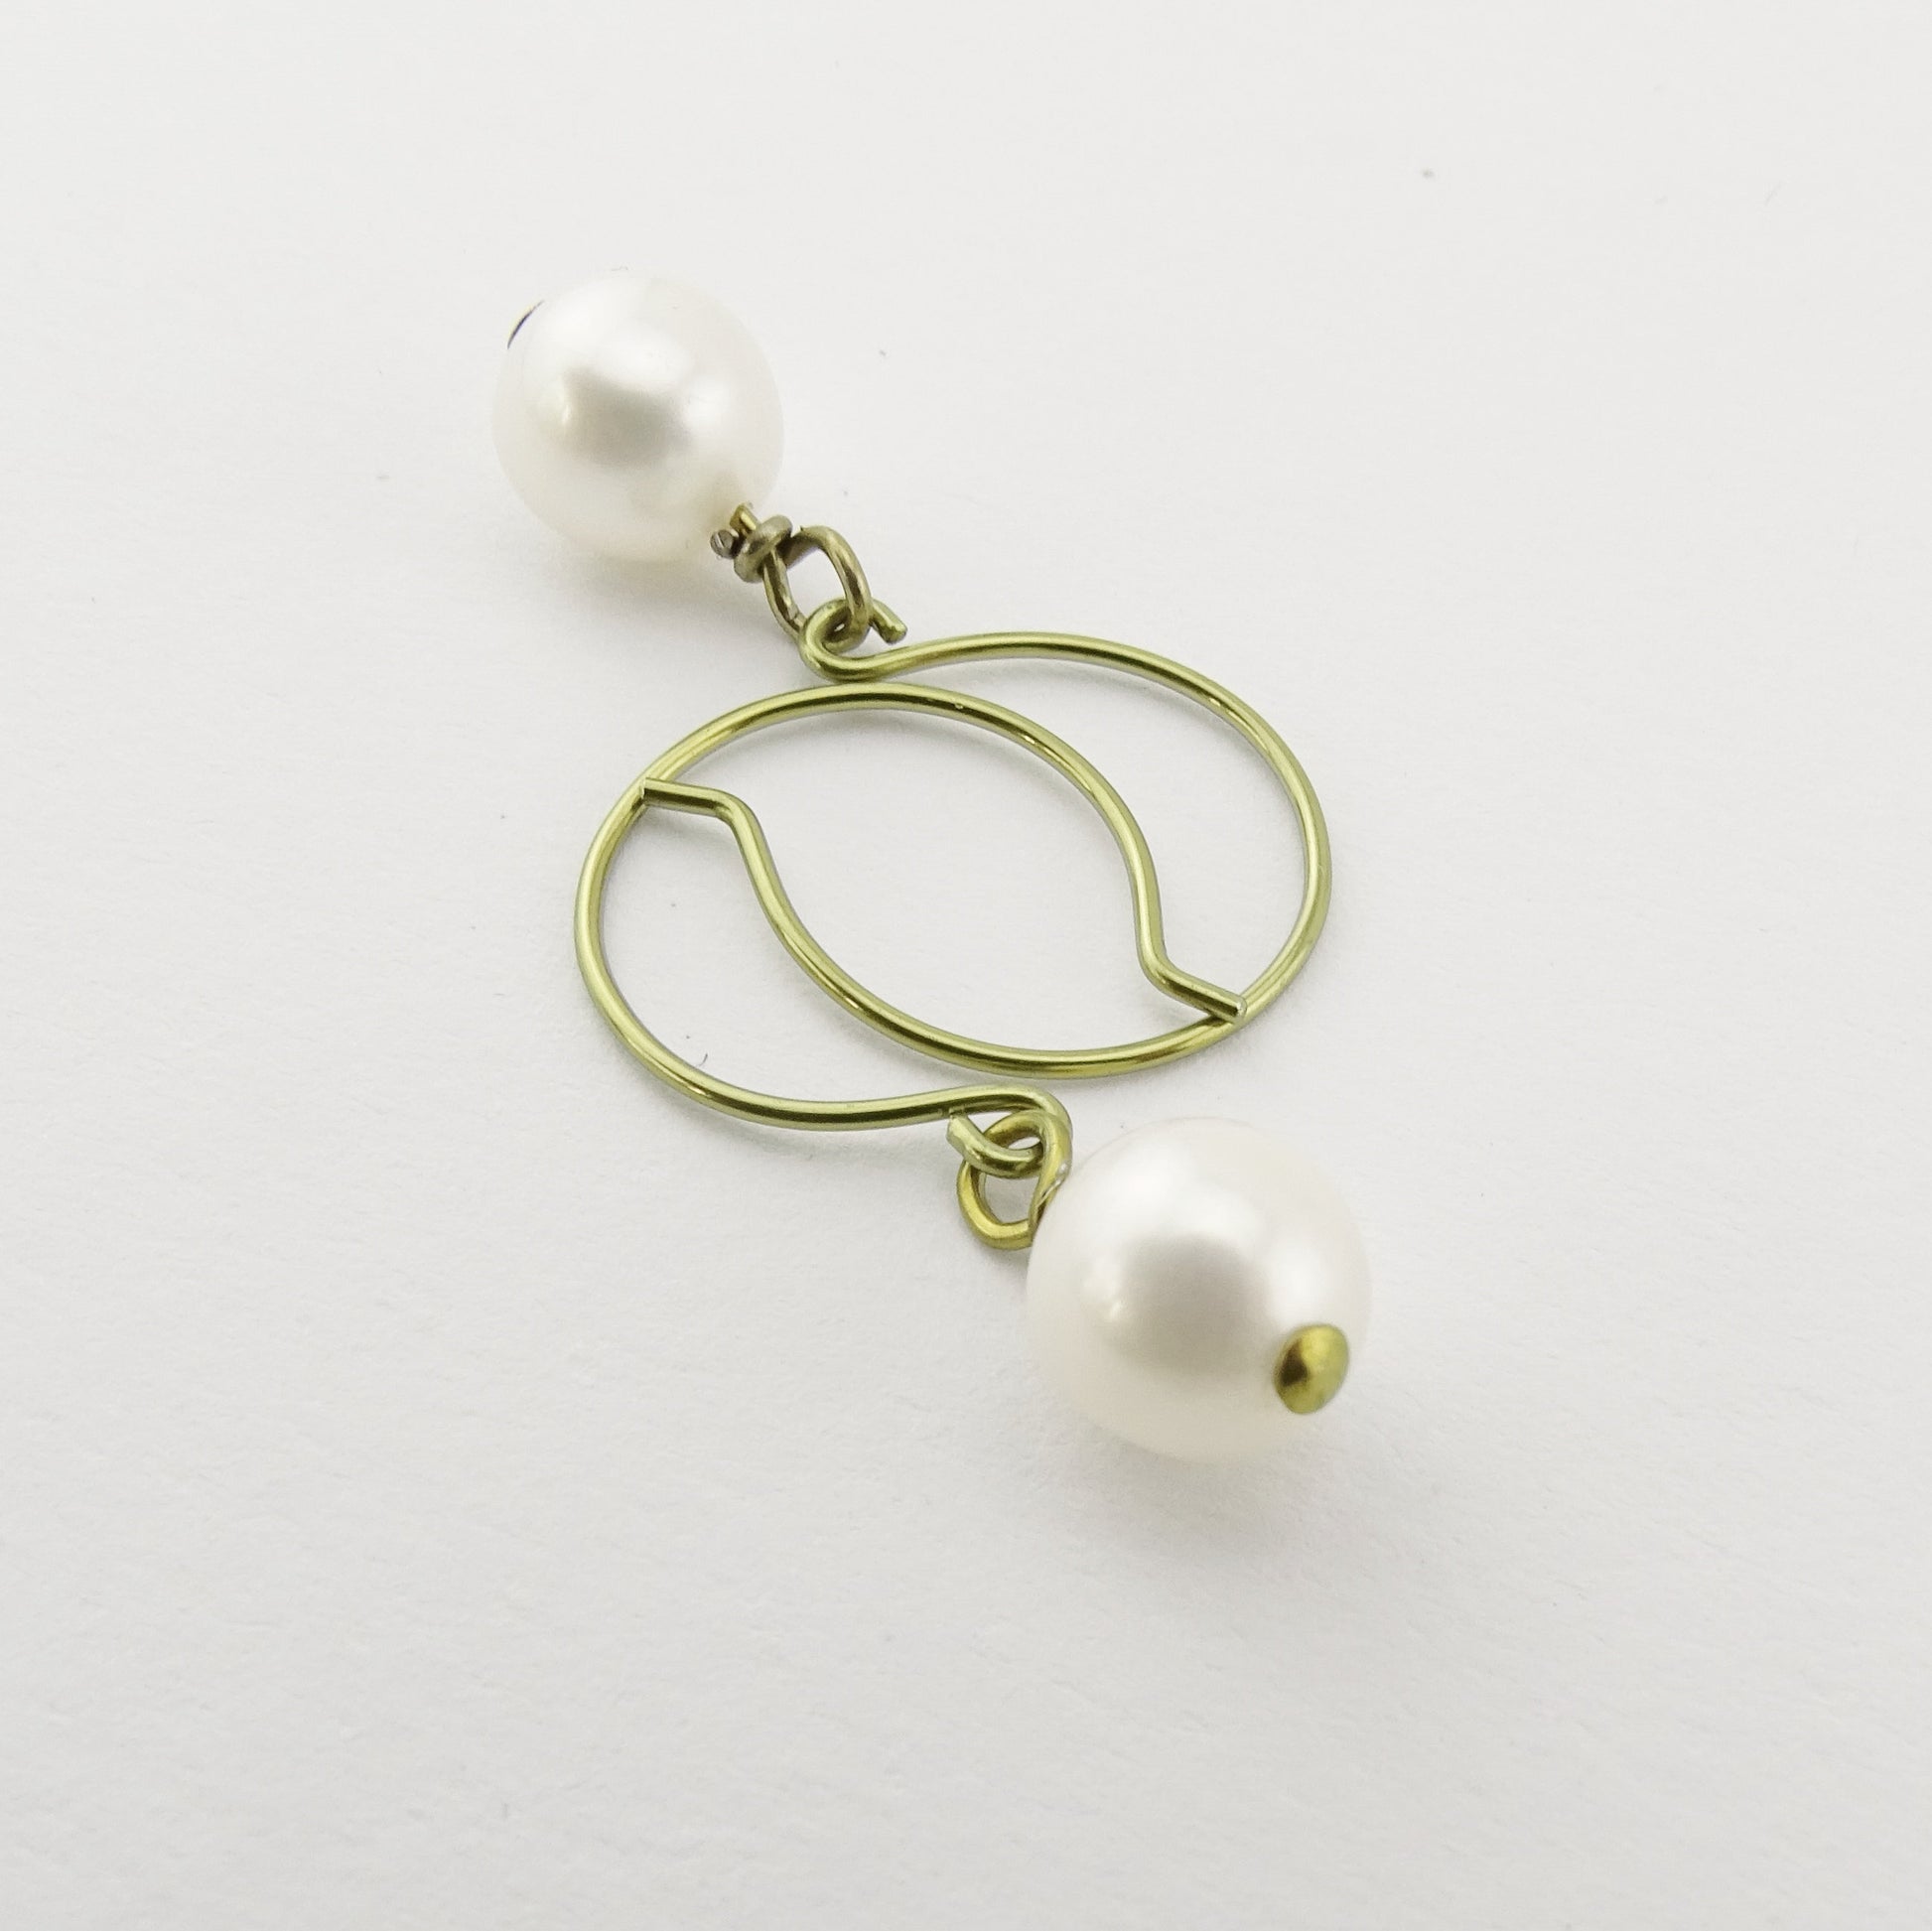 White Genuine Pearl Niobium Earrings, Yellow Gold Niobium Nickel Free Earrings for Sensitive Ears, Freshwater Pearls Hypoallergenic Earrings